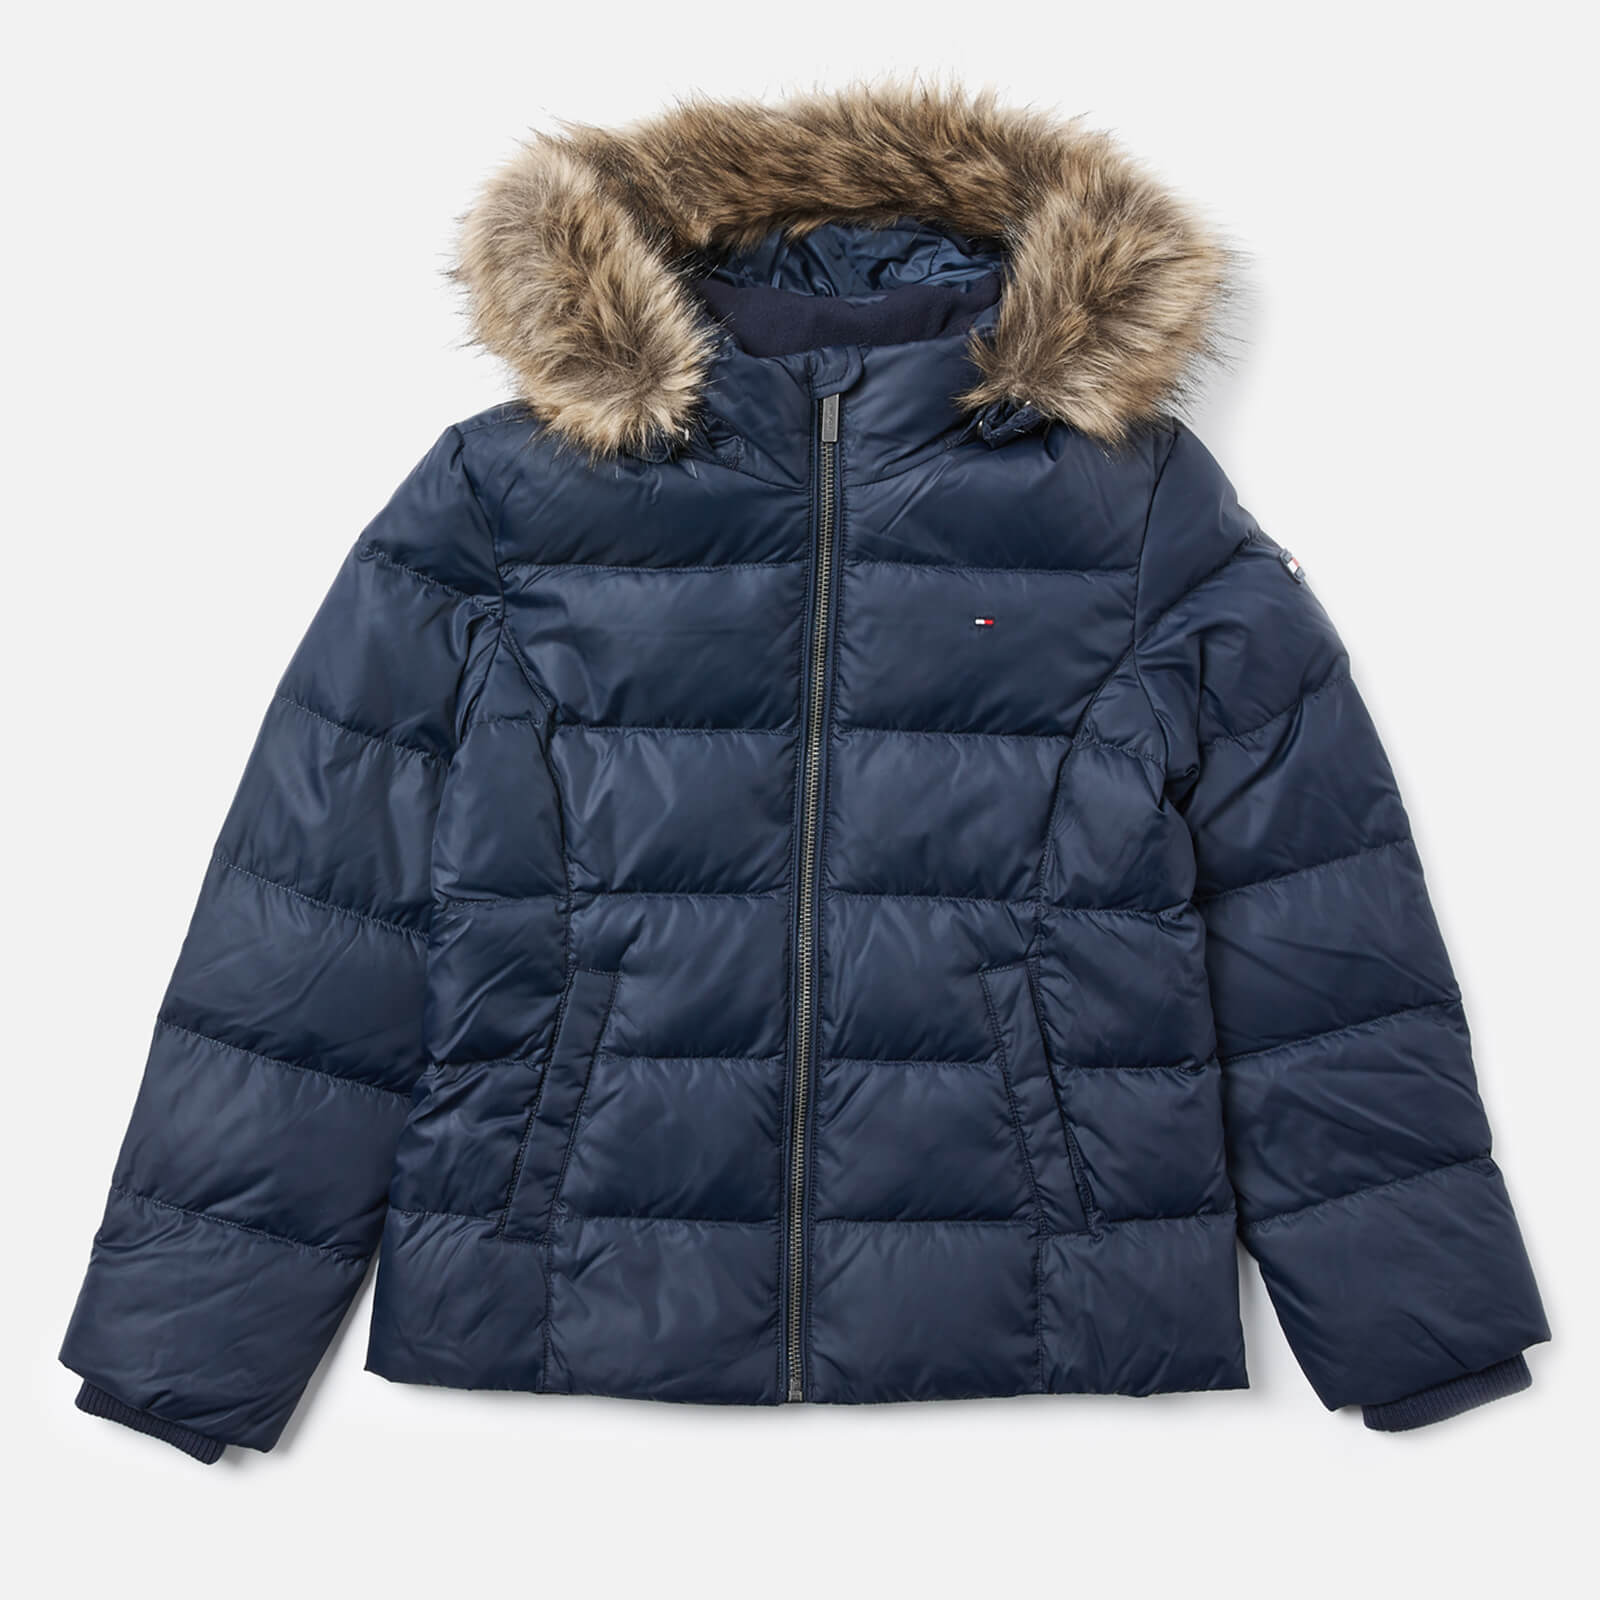 essential basic jacket tommy hilfiger